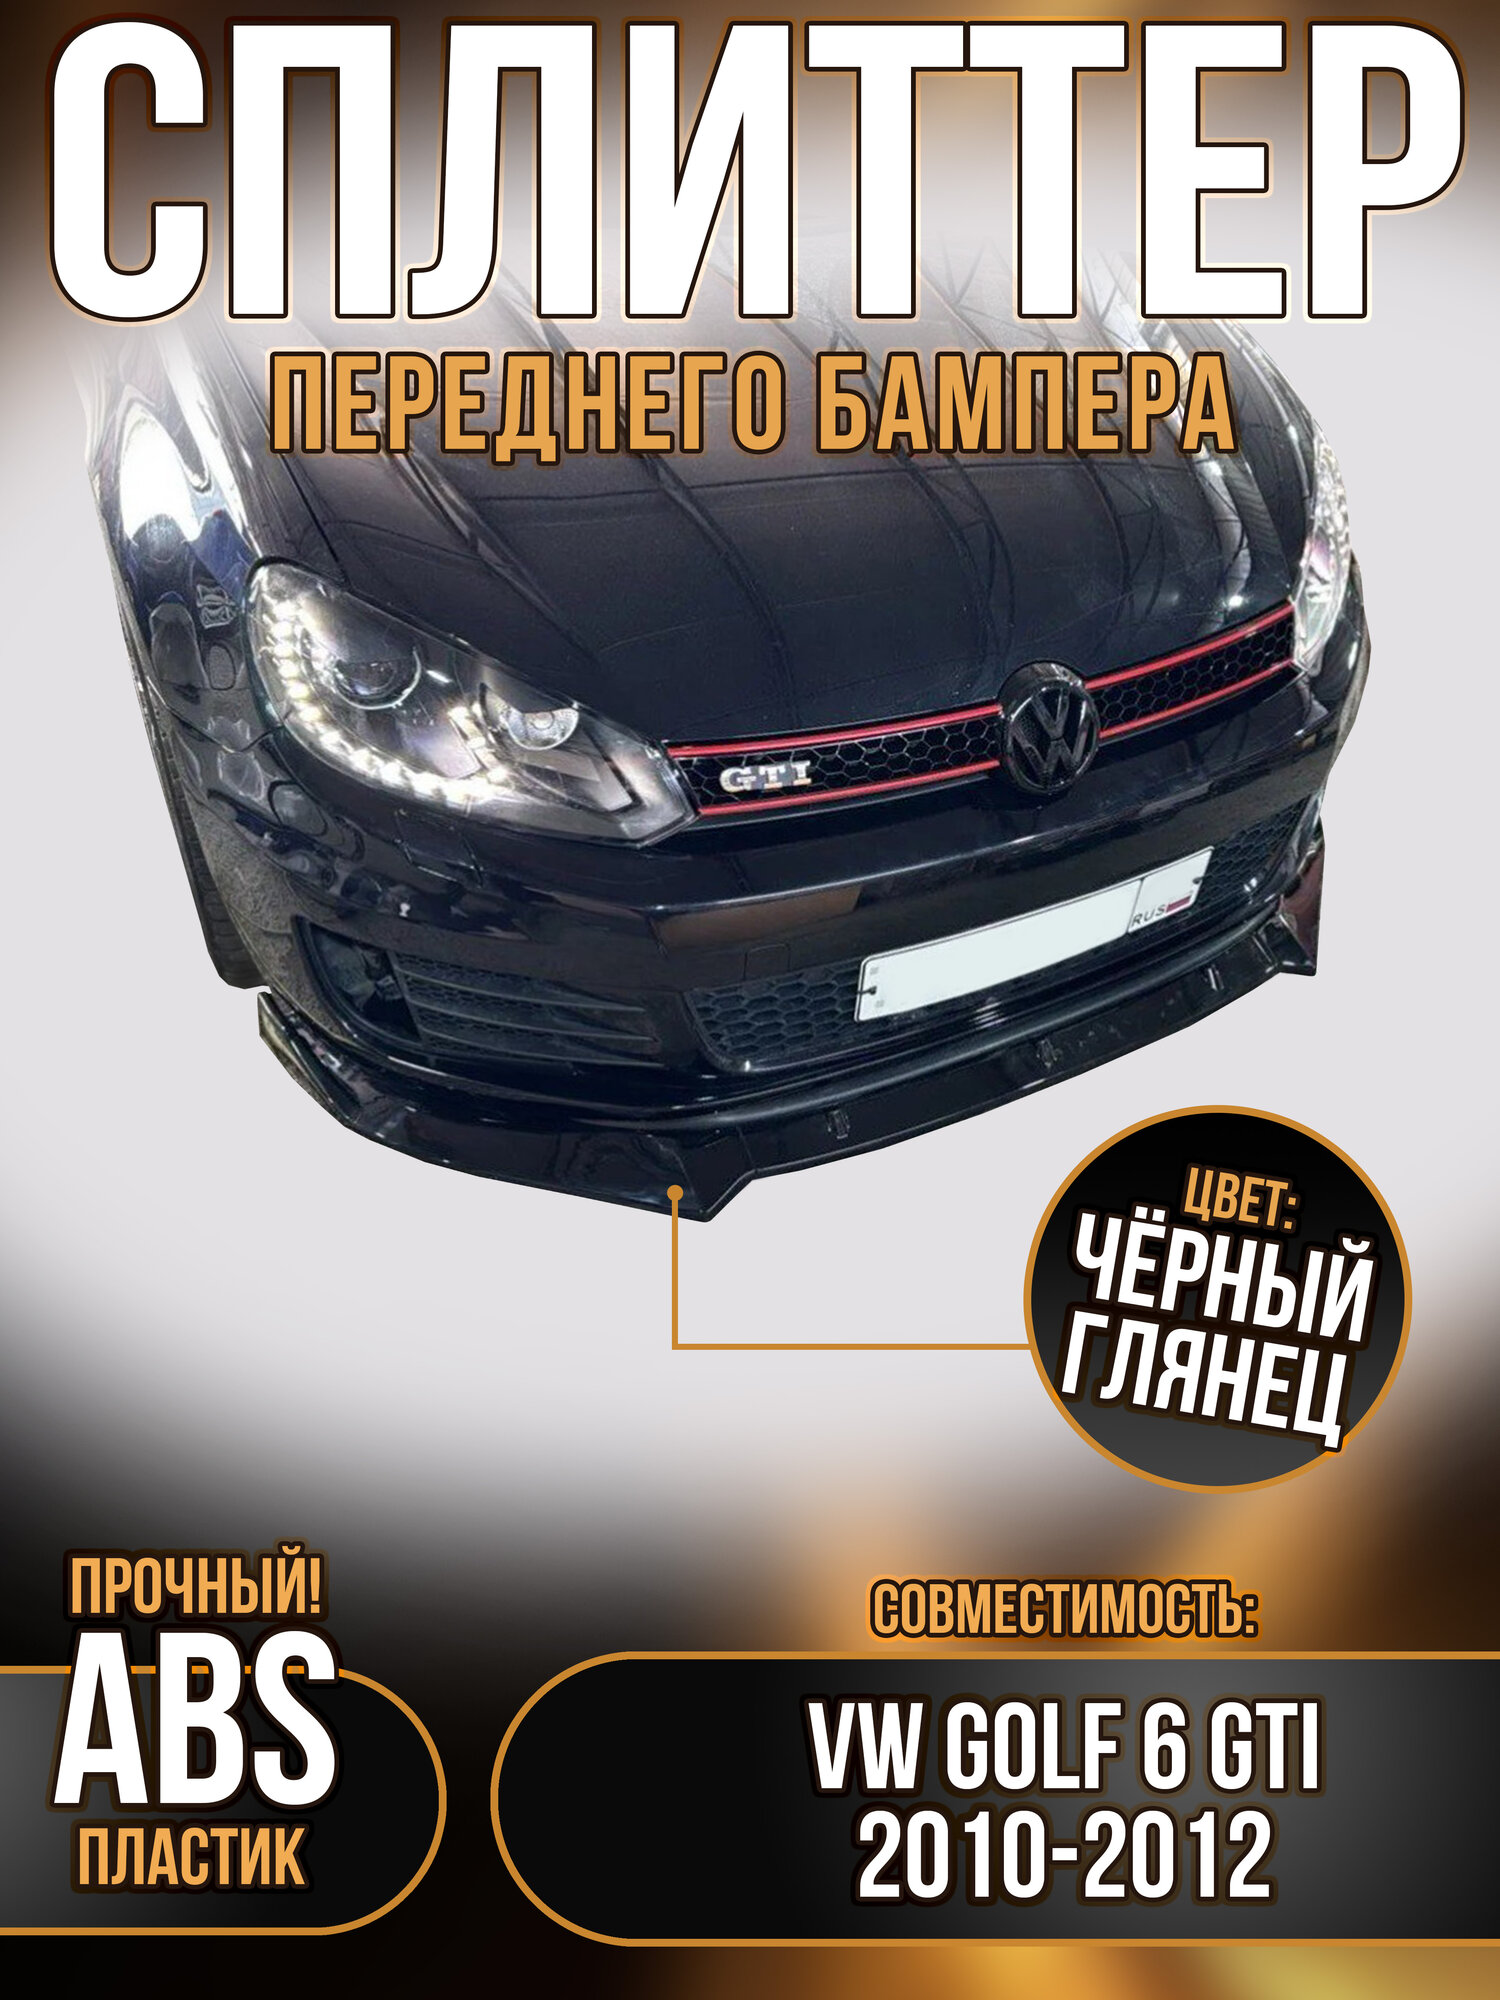 Губа переднего бампера VW Golf 6 GTI 2010-2012 черный глянец